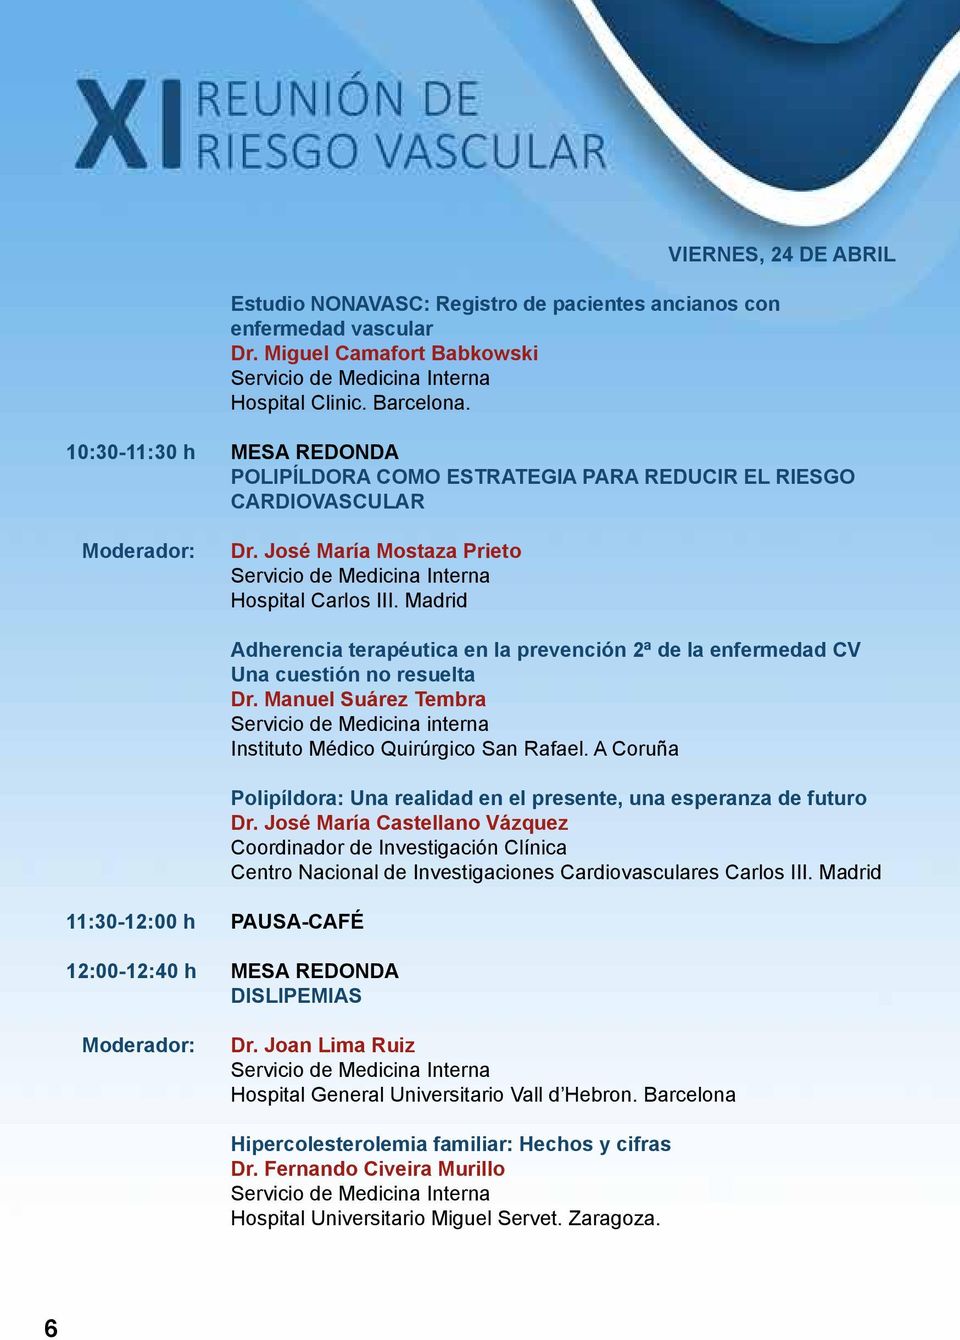 Madrid 11:30-12:00 h PAUSA-CAFÉ Adherencia terapéutica en la prevención 2ª de la enfermedad CV Una cuestión no resuelta Dr.